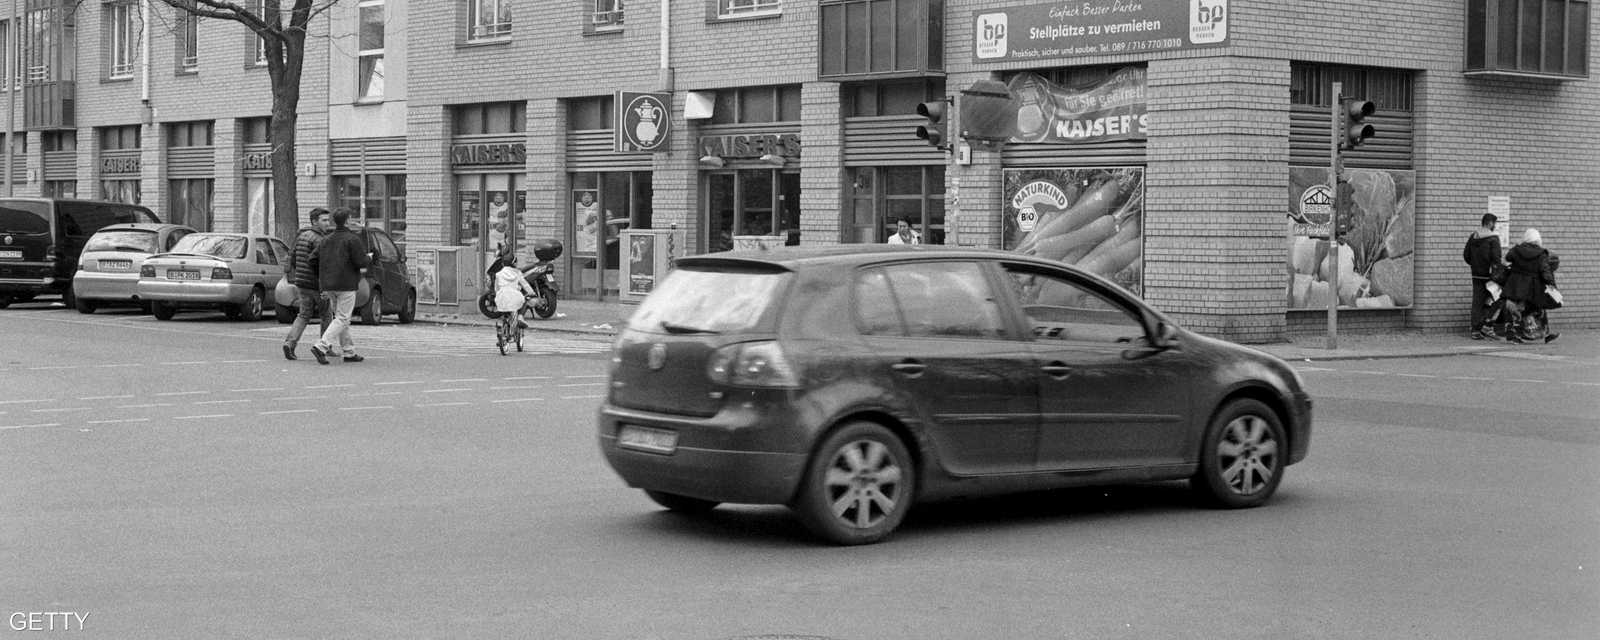 سيارة تمر في تقاطع شارعي غيته وألكسندغينين في برلين بتاريخ 21 أبريل 2015 